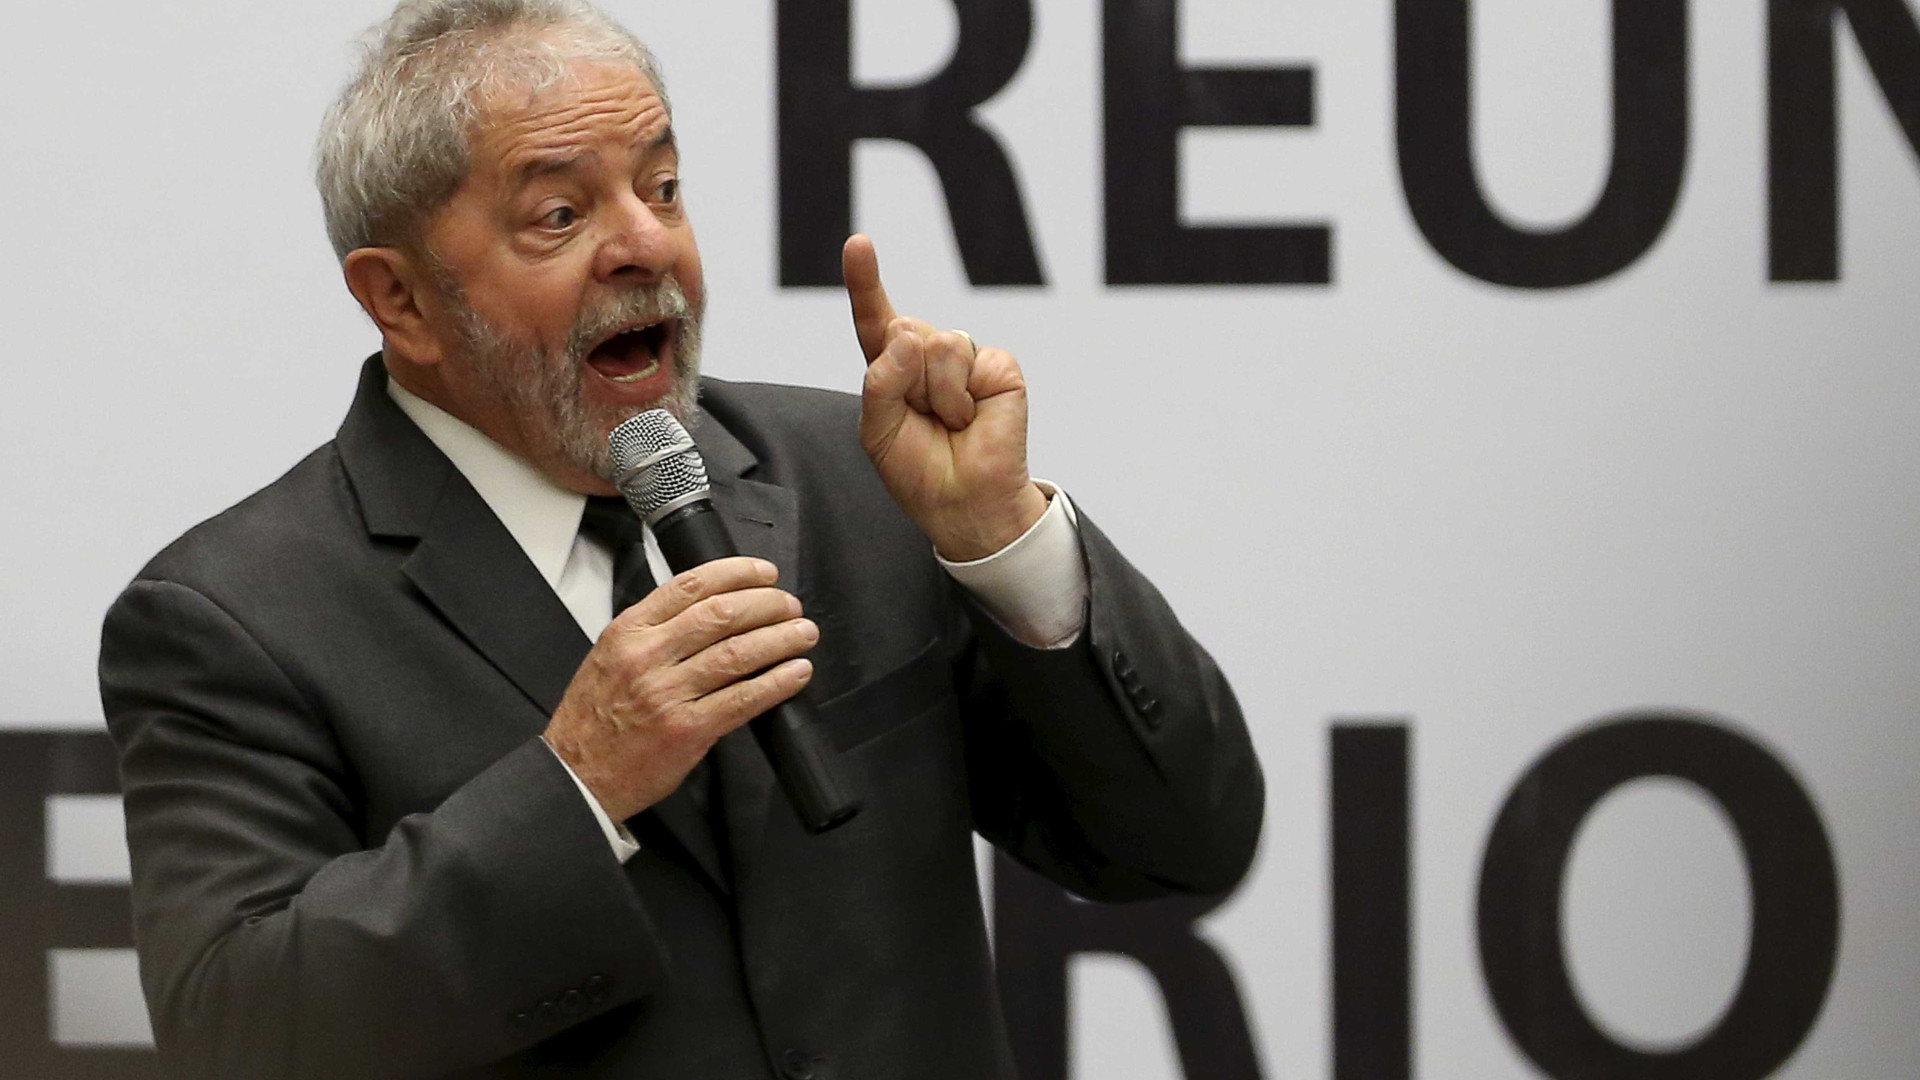 Lula sobre Temer:
'se não sabe governar, vai embora'